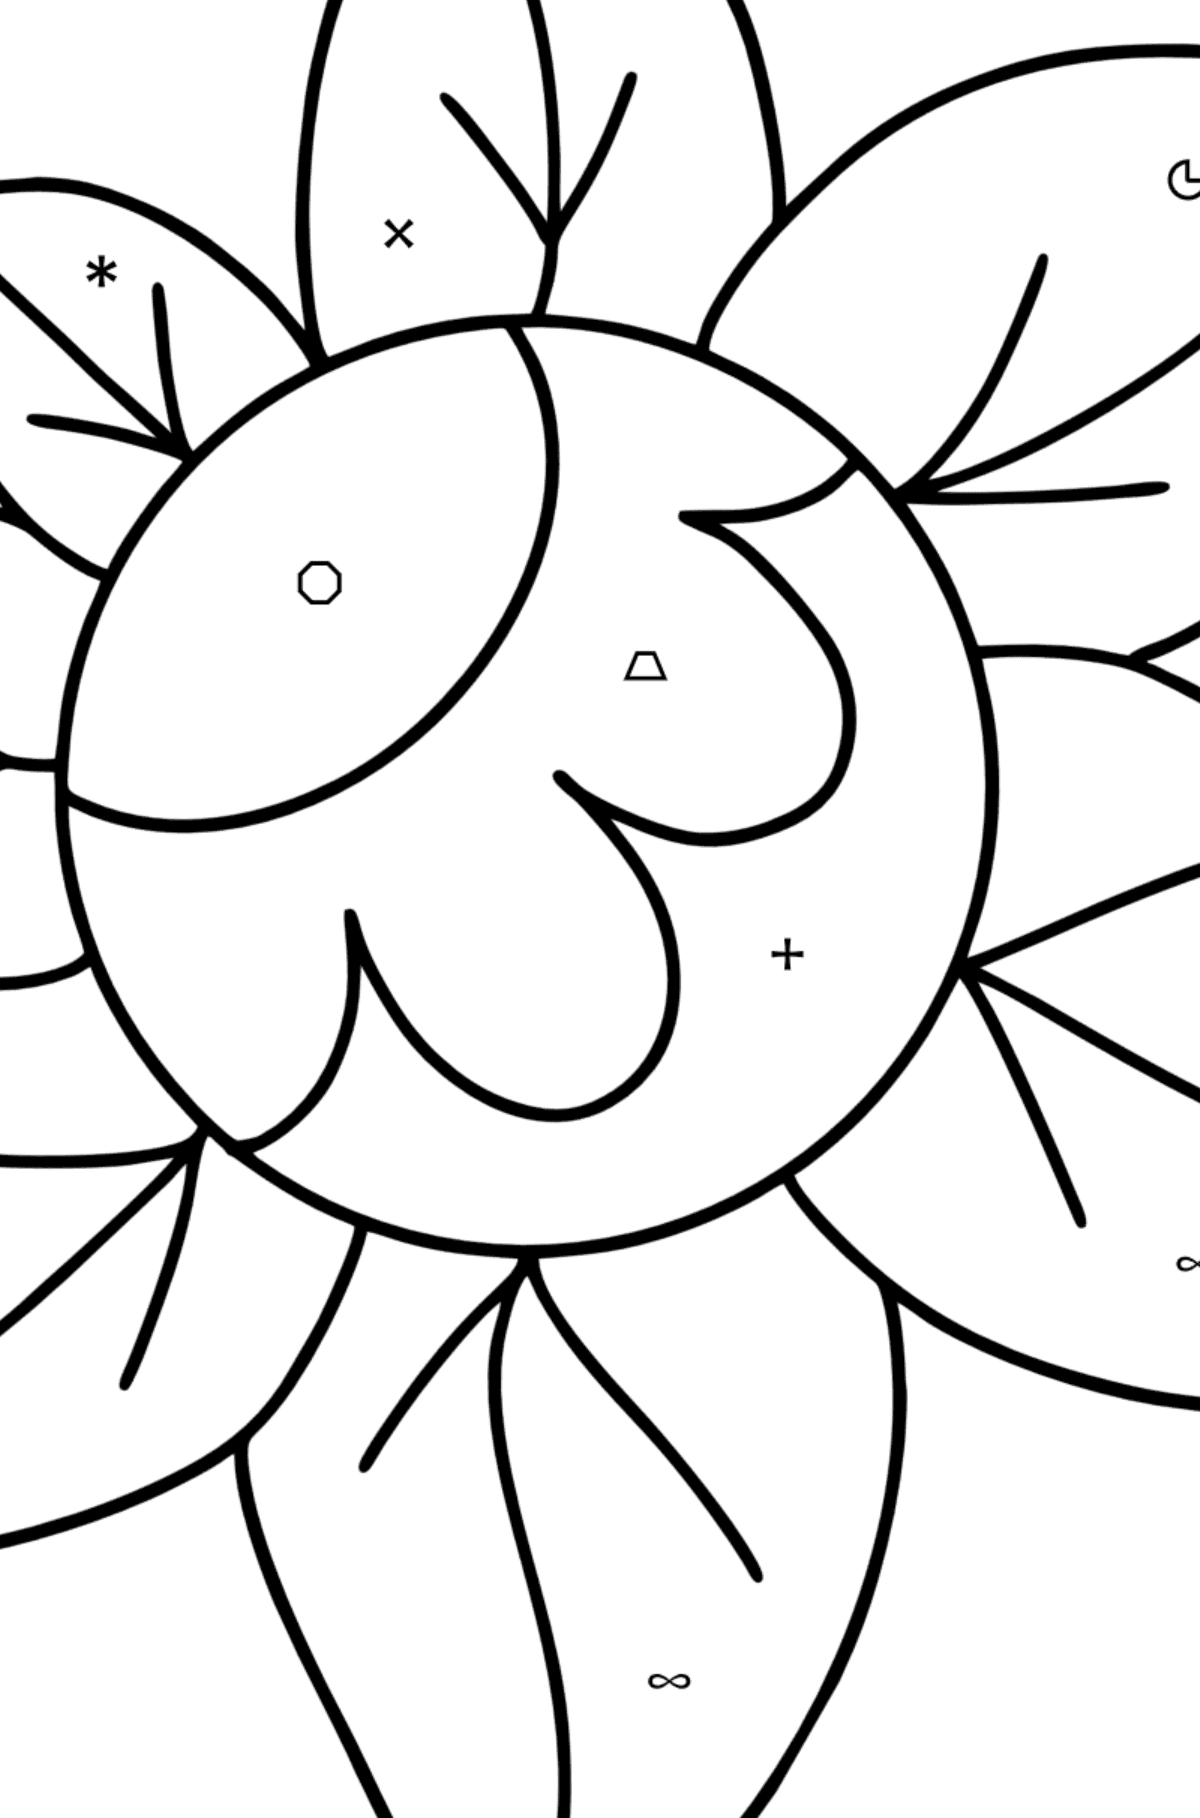 Ausmalbild Zentangle Art Blume - Ausmalen nach Symbolen für Kinder